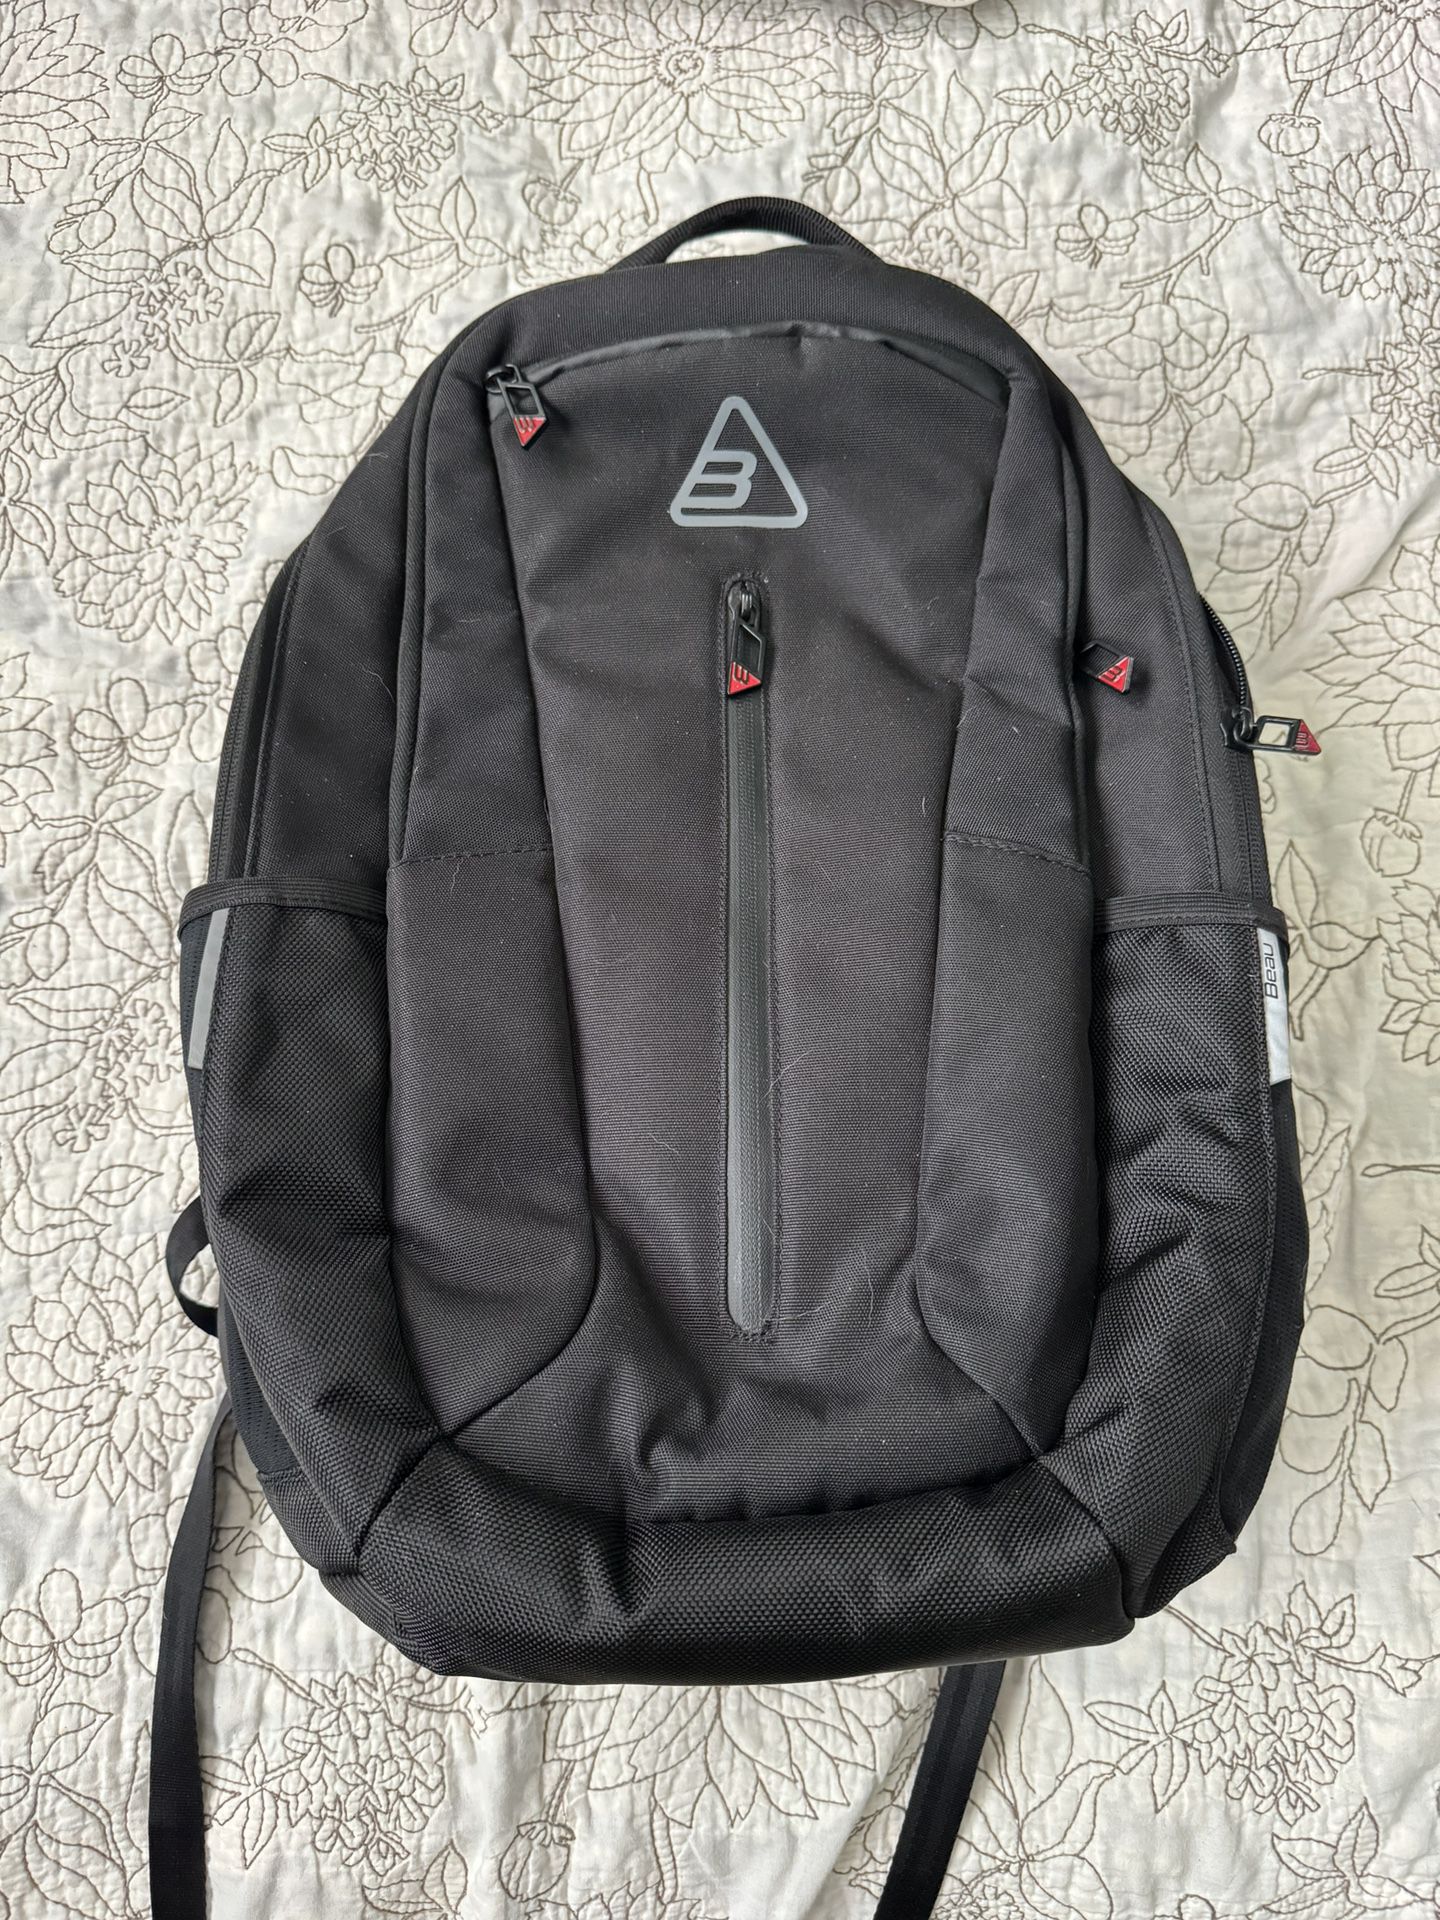 Beau Industries R1 Backpack